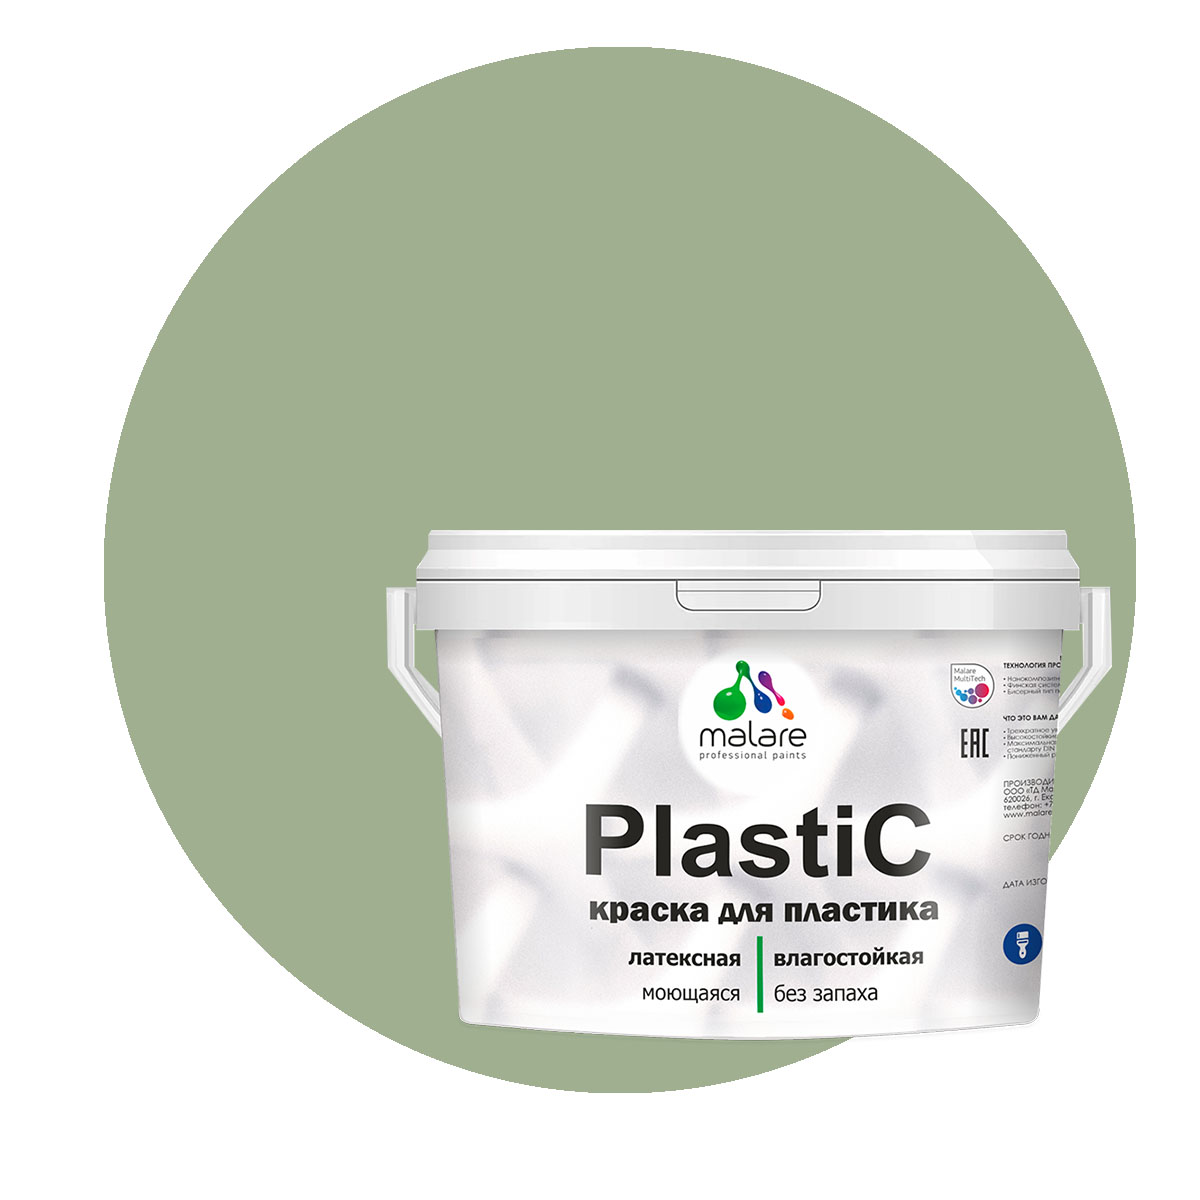 Краска Malare PlastiC для пластика, ПВХ, для сайдинга, лиственный зеленый, 10 кг. краска malare plastic для пластика пвх для сайдинга зеленый мичиган 2 кг